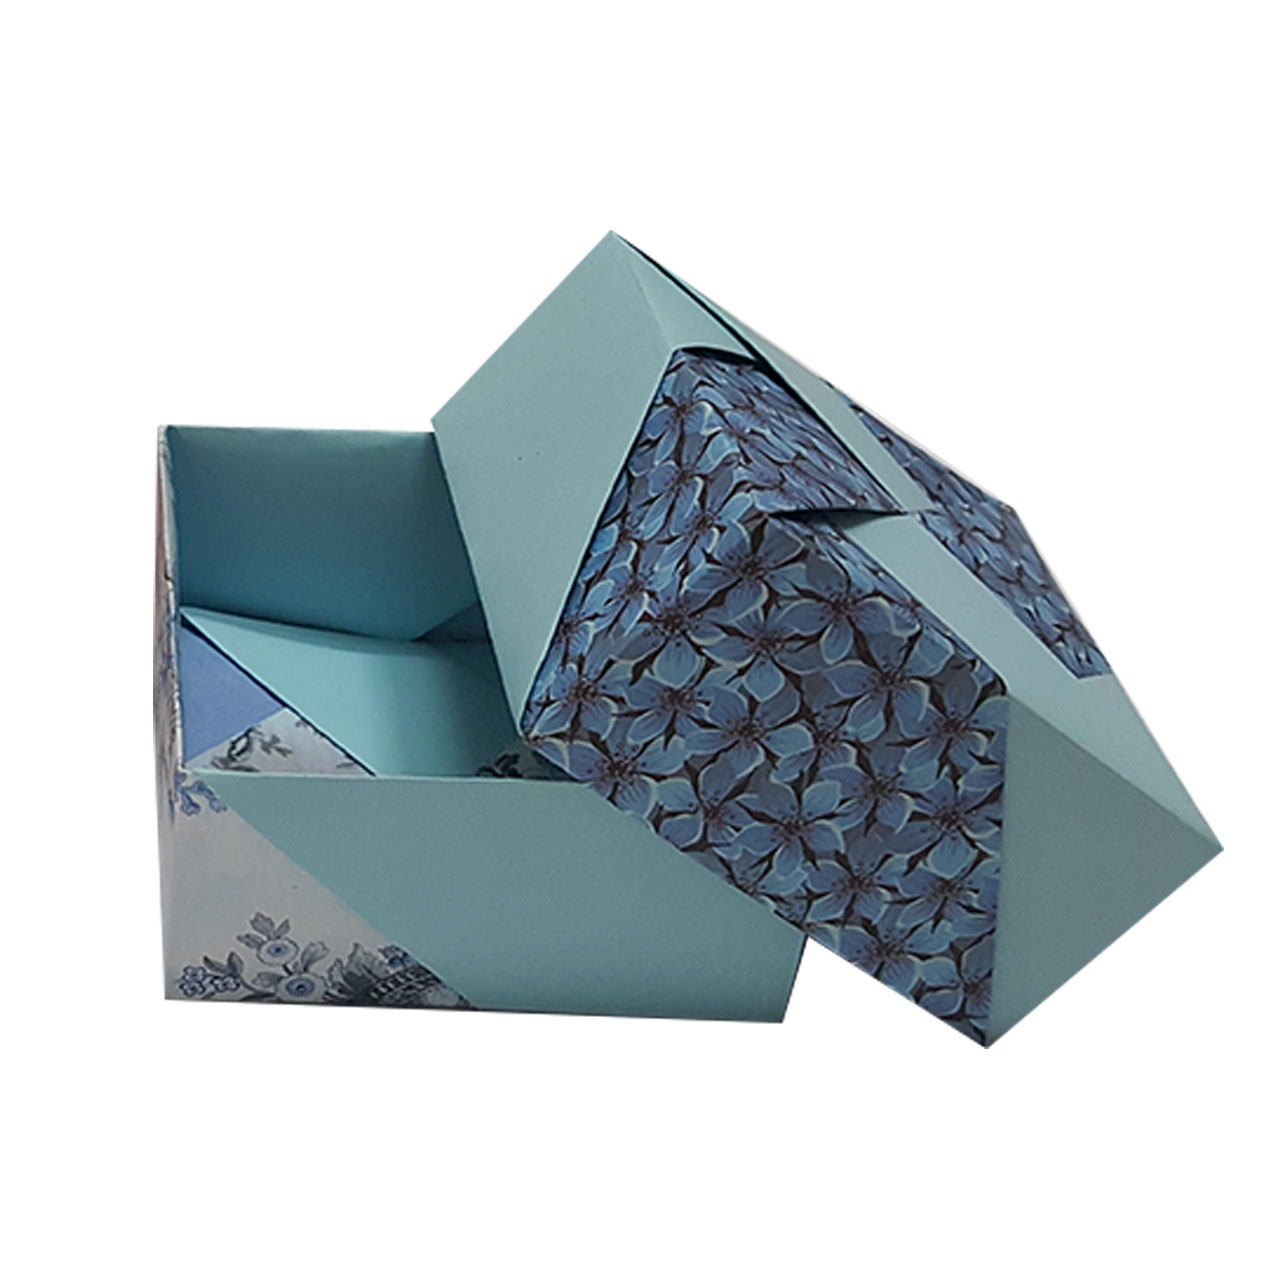 جعبه کادو مدل اریگامی blue sky